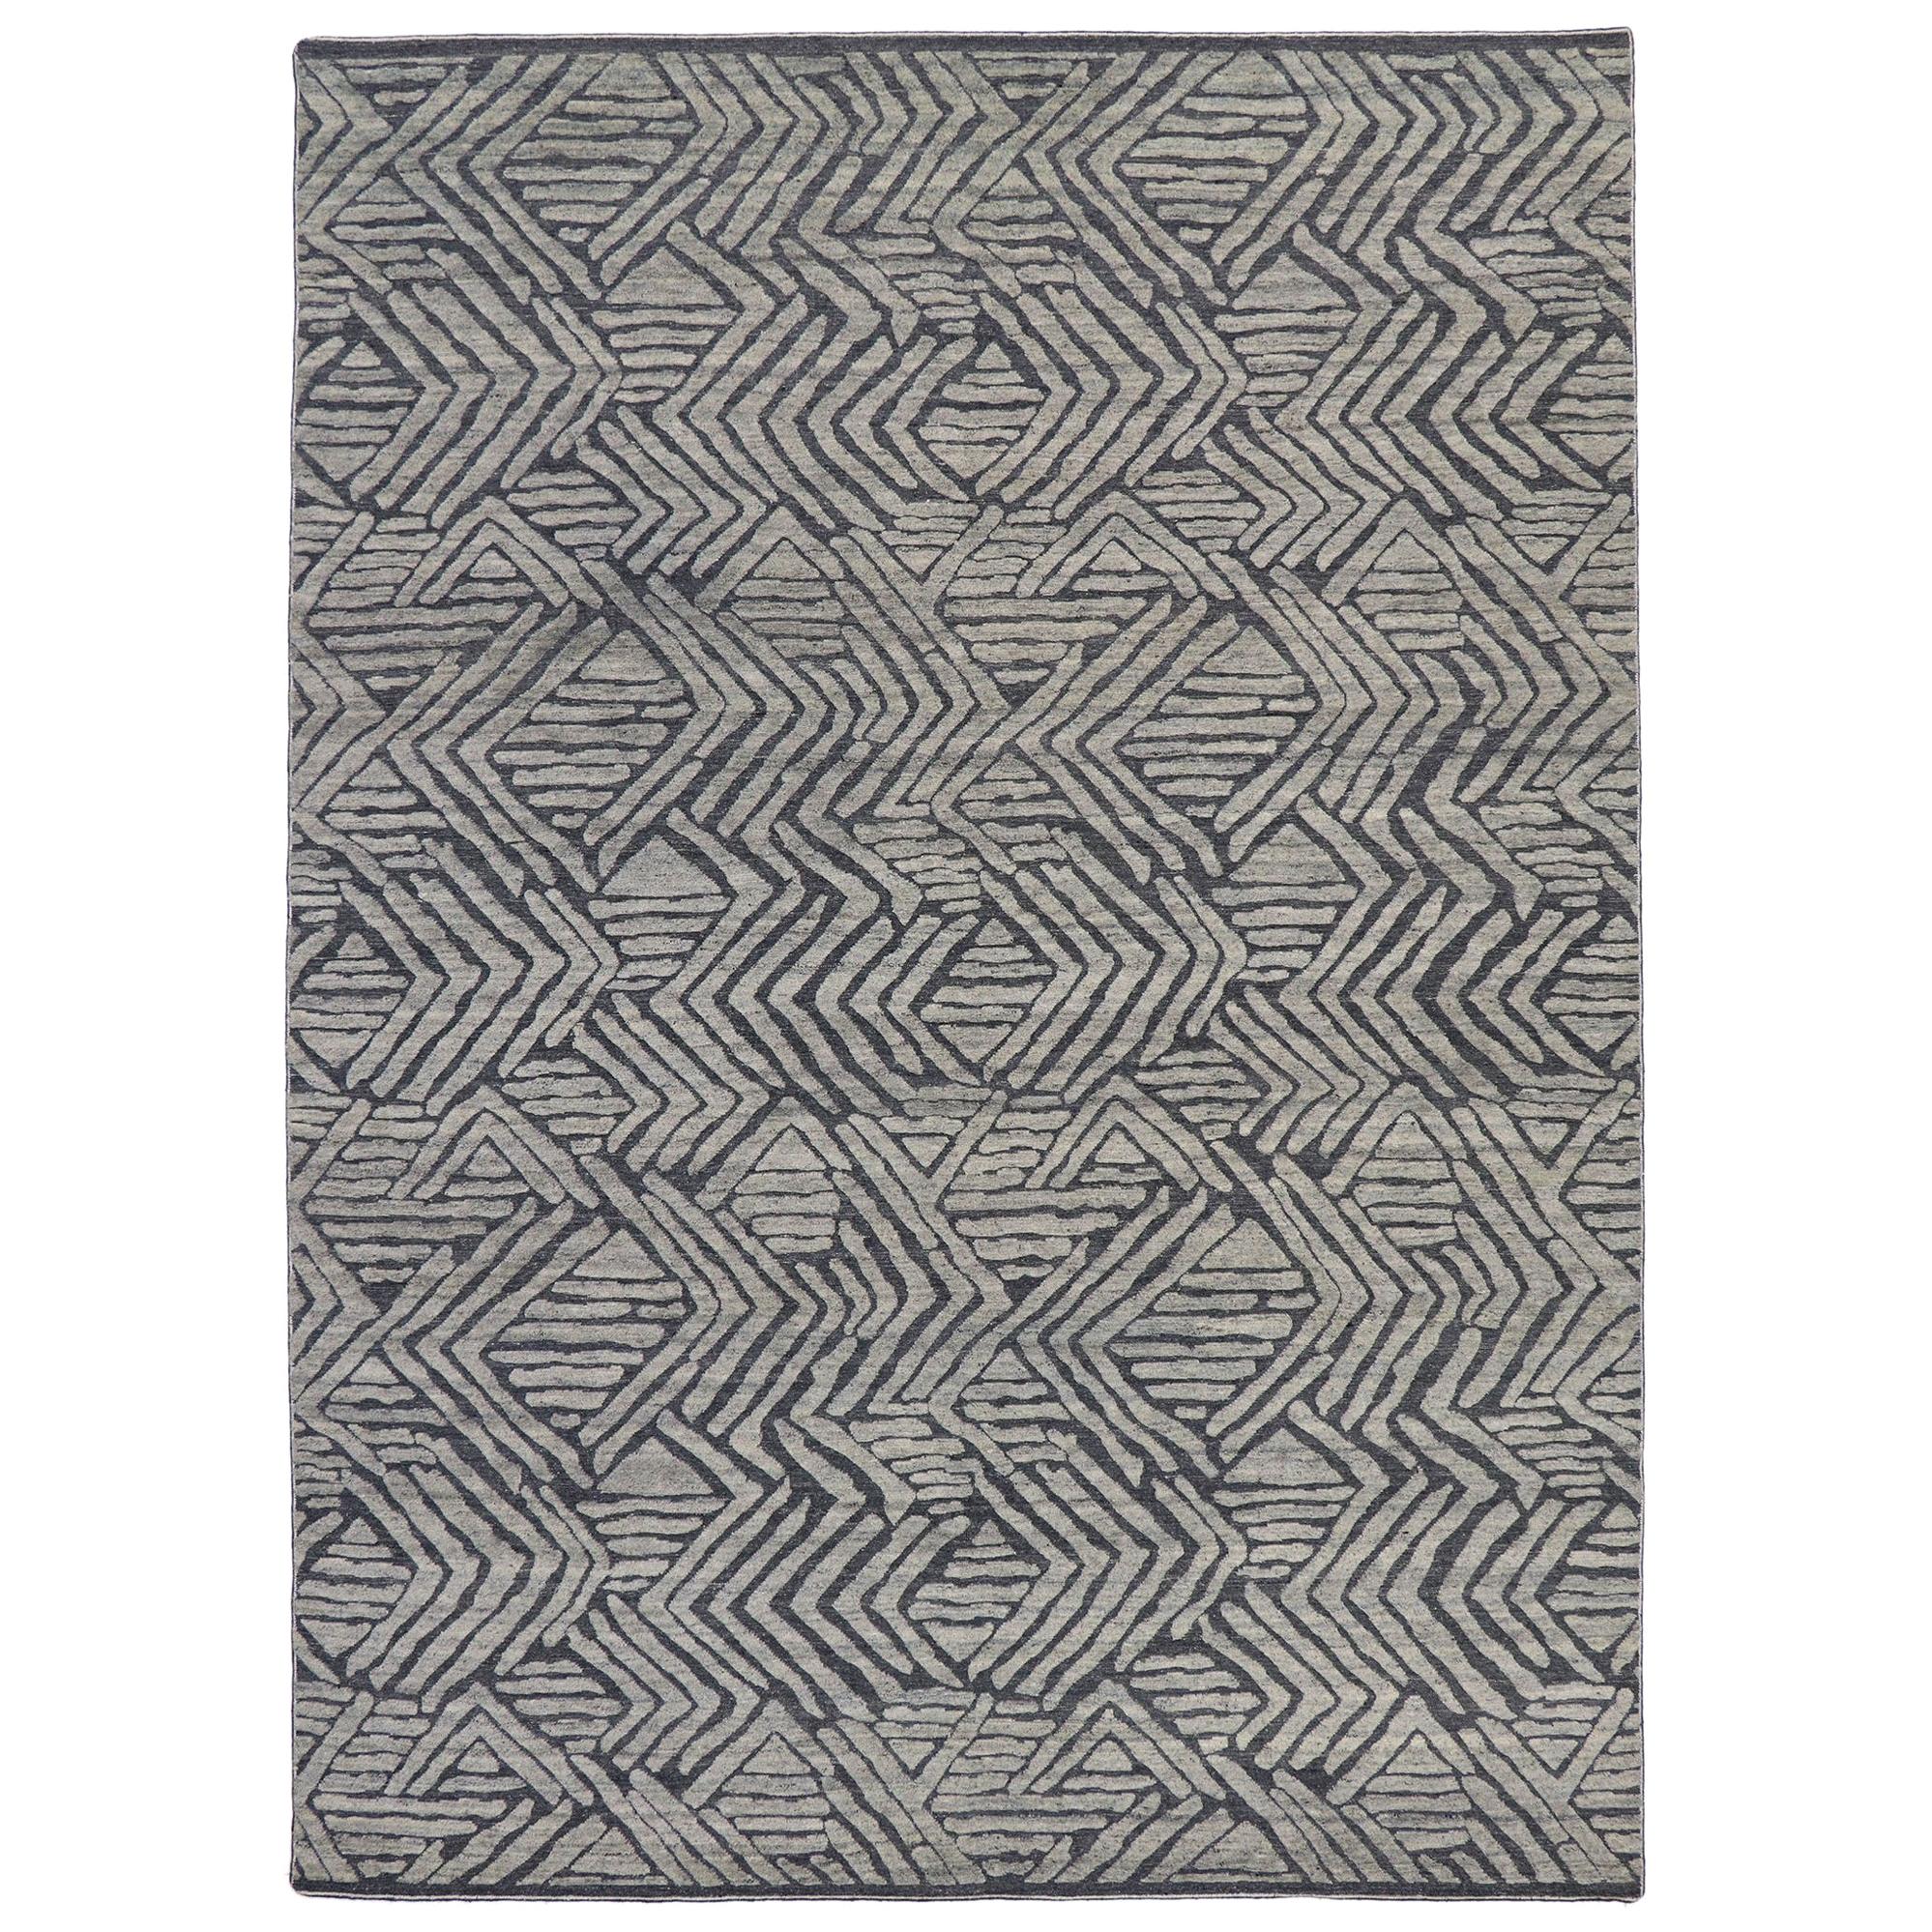 Nouveau tapis Souf marocain contemporain avec un design en relief et un style moderne